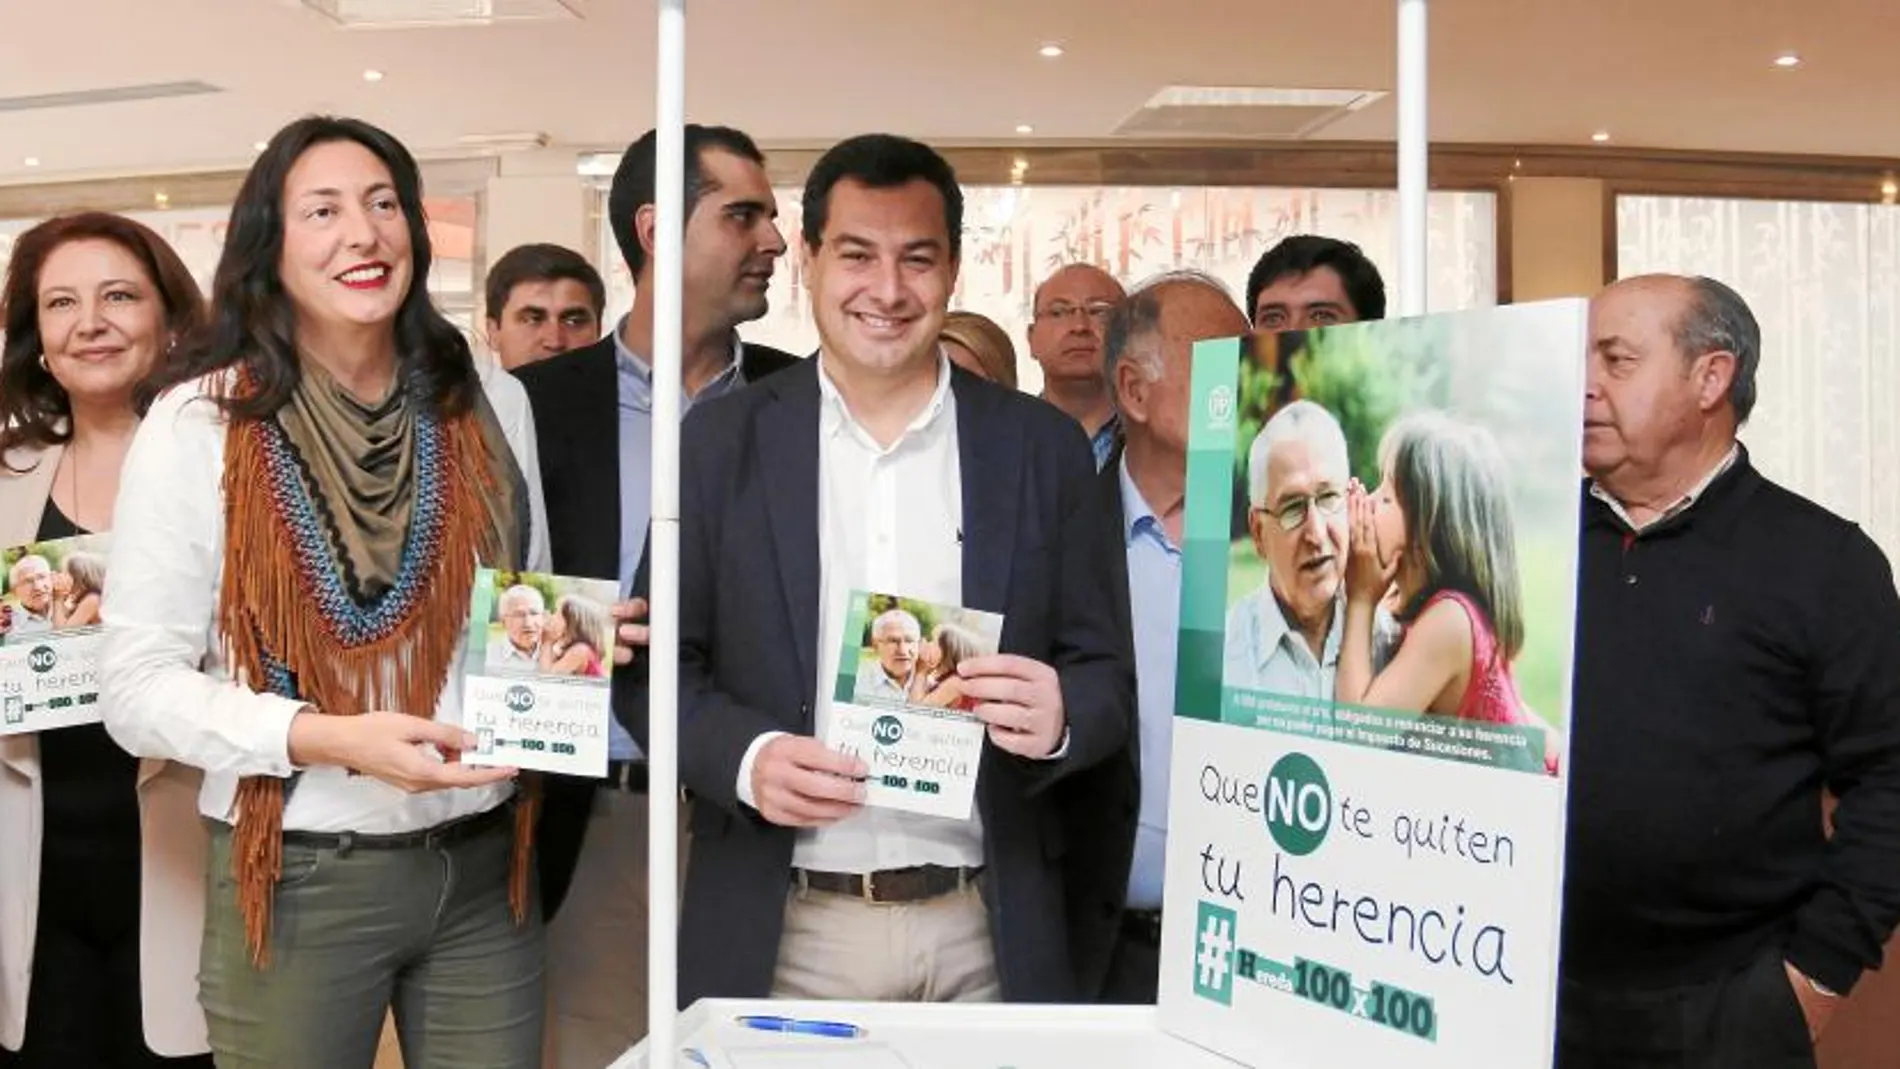 Juanma Moreno participó ayer en el Consejo Regional de alcaldes celebrado en Almería, donde impulsó la campaña por la bajada del impuesto de sucesiones